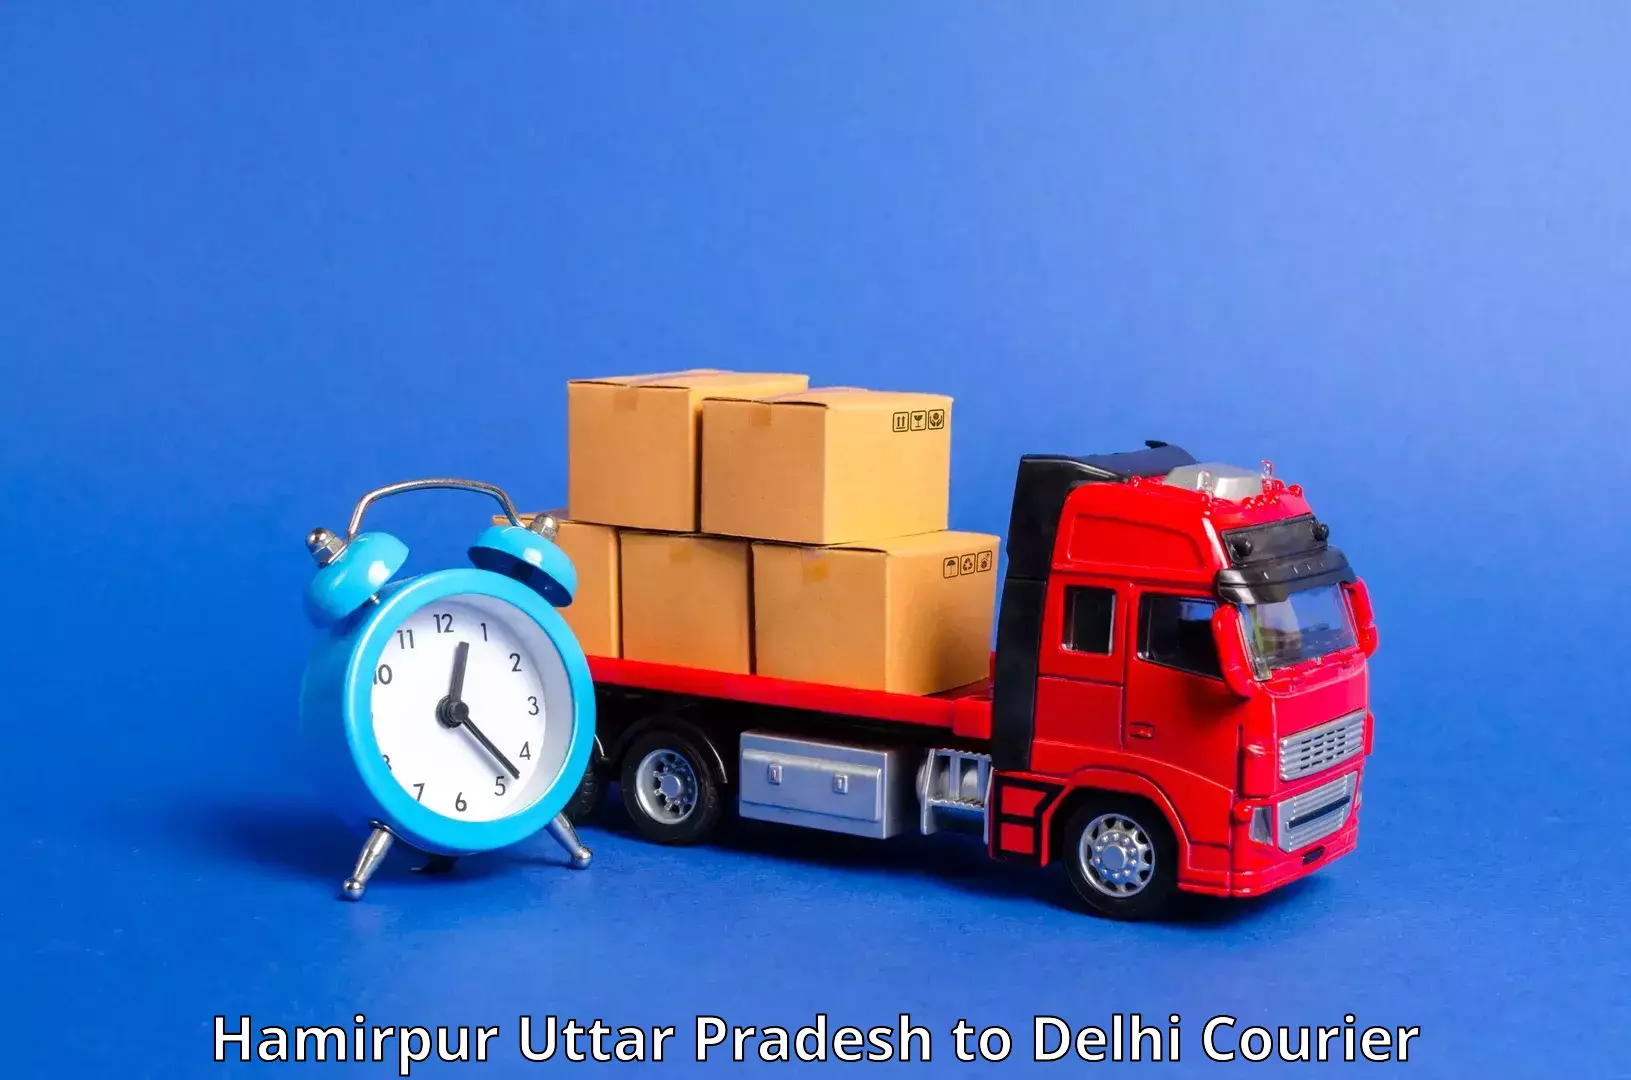 Lightweight courier Hamirpur Uttar Pradesh to Guru Gobind Singh Indraprastha University New Delhi